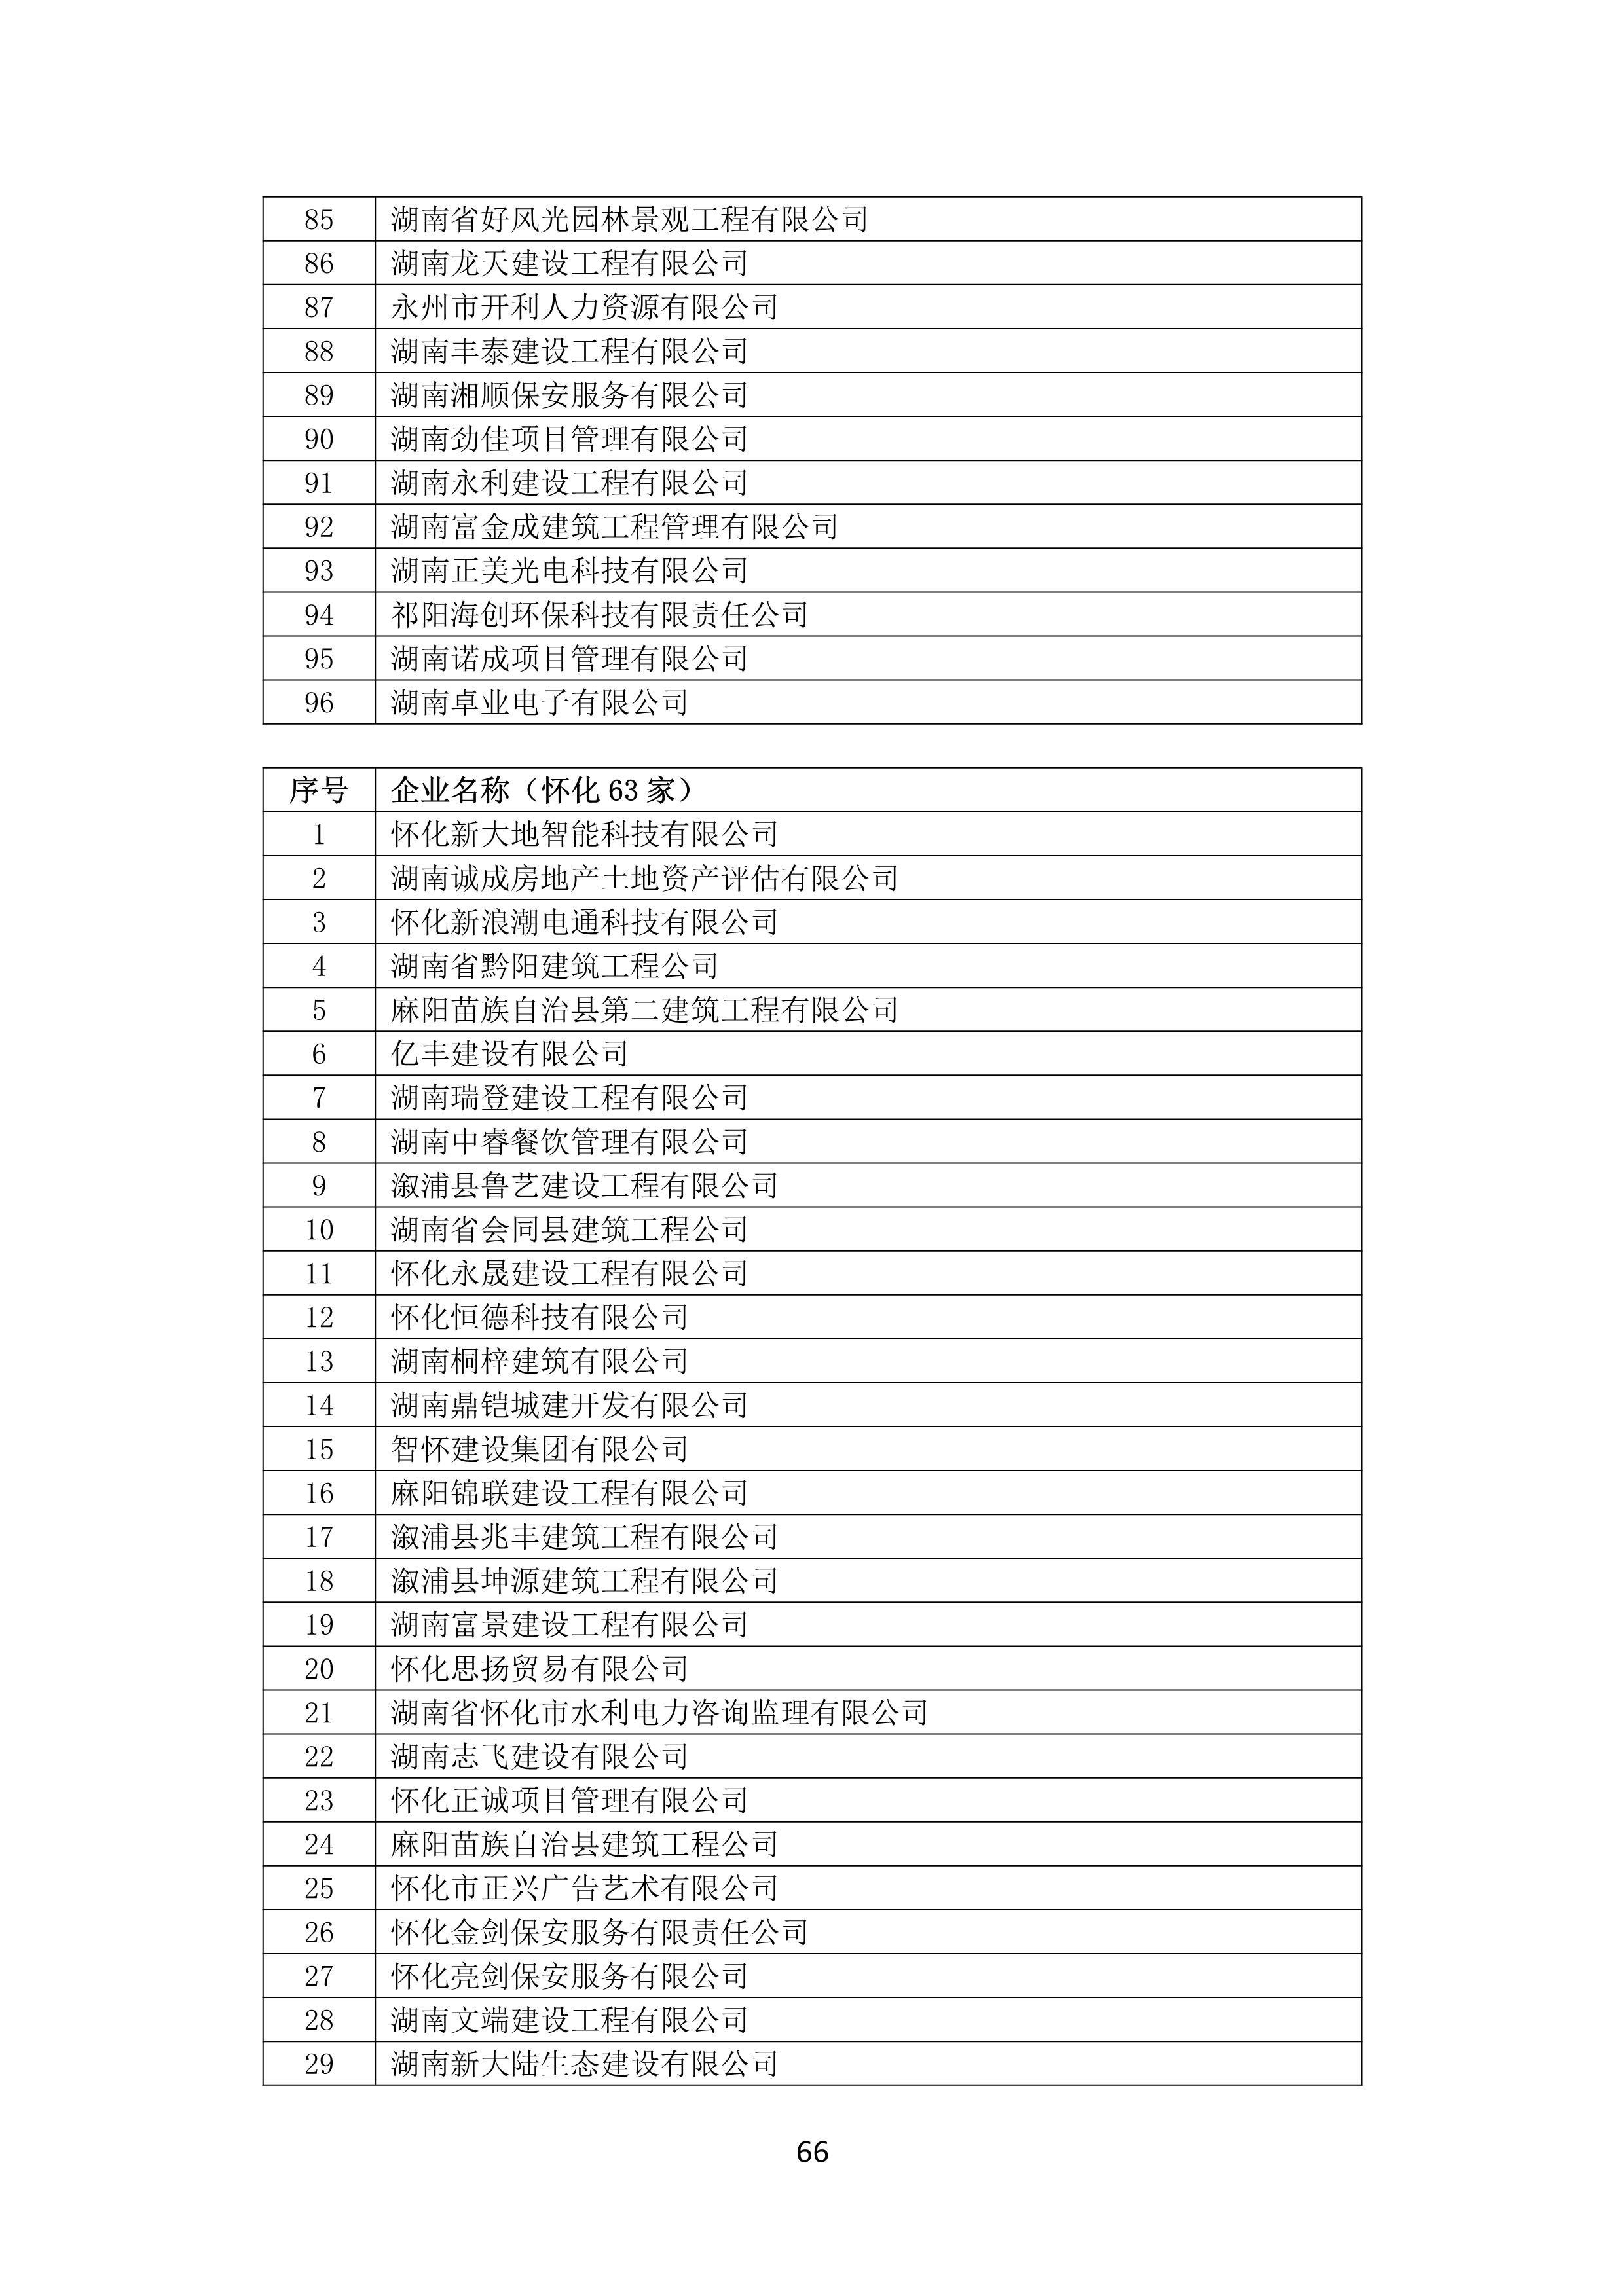 2021 年(nián)度湖南省守合同重信用企業名單_67.png